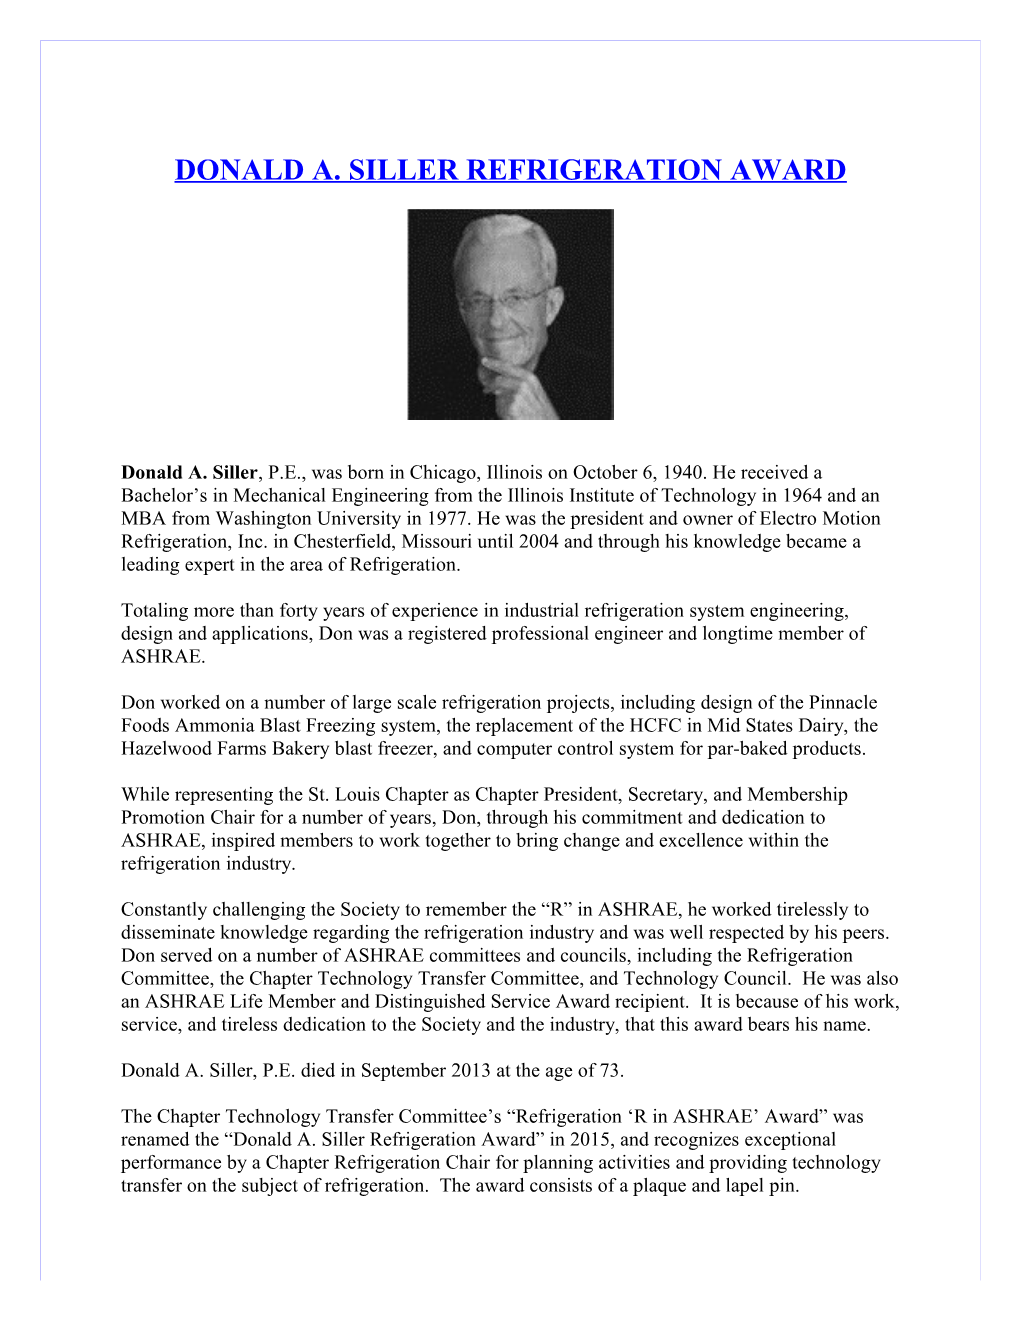 Donald A. Siller Refrigeration Award